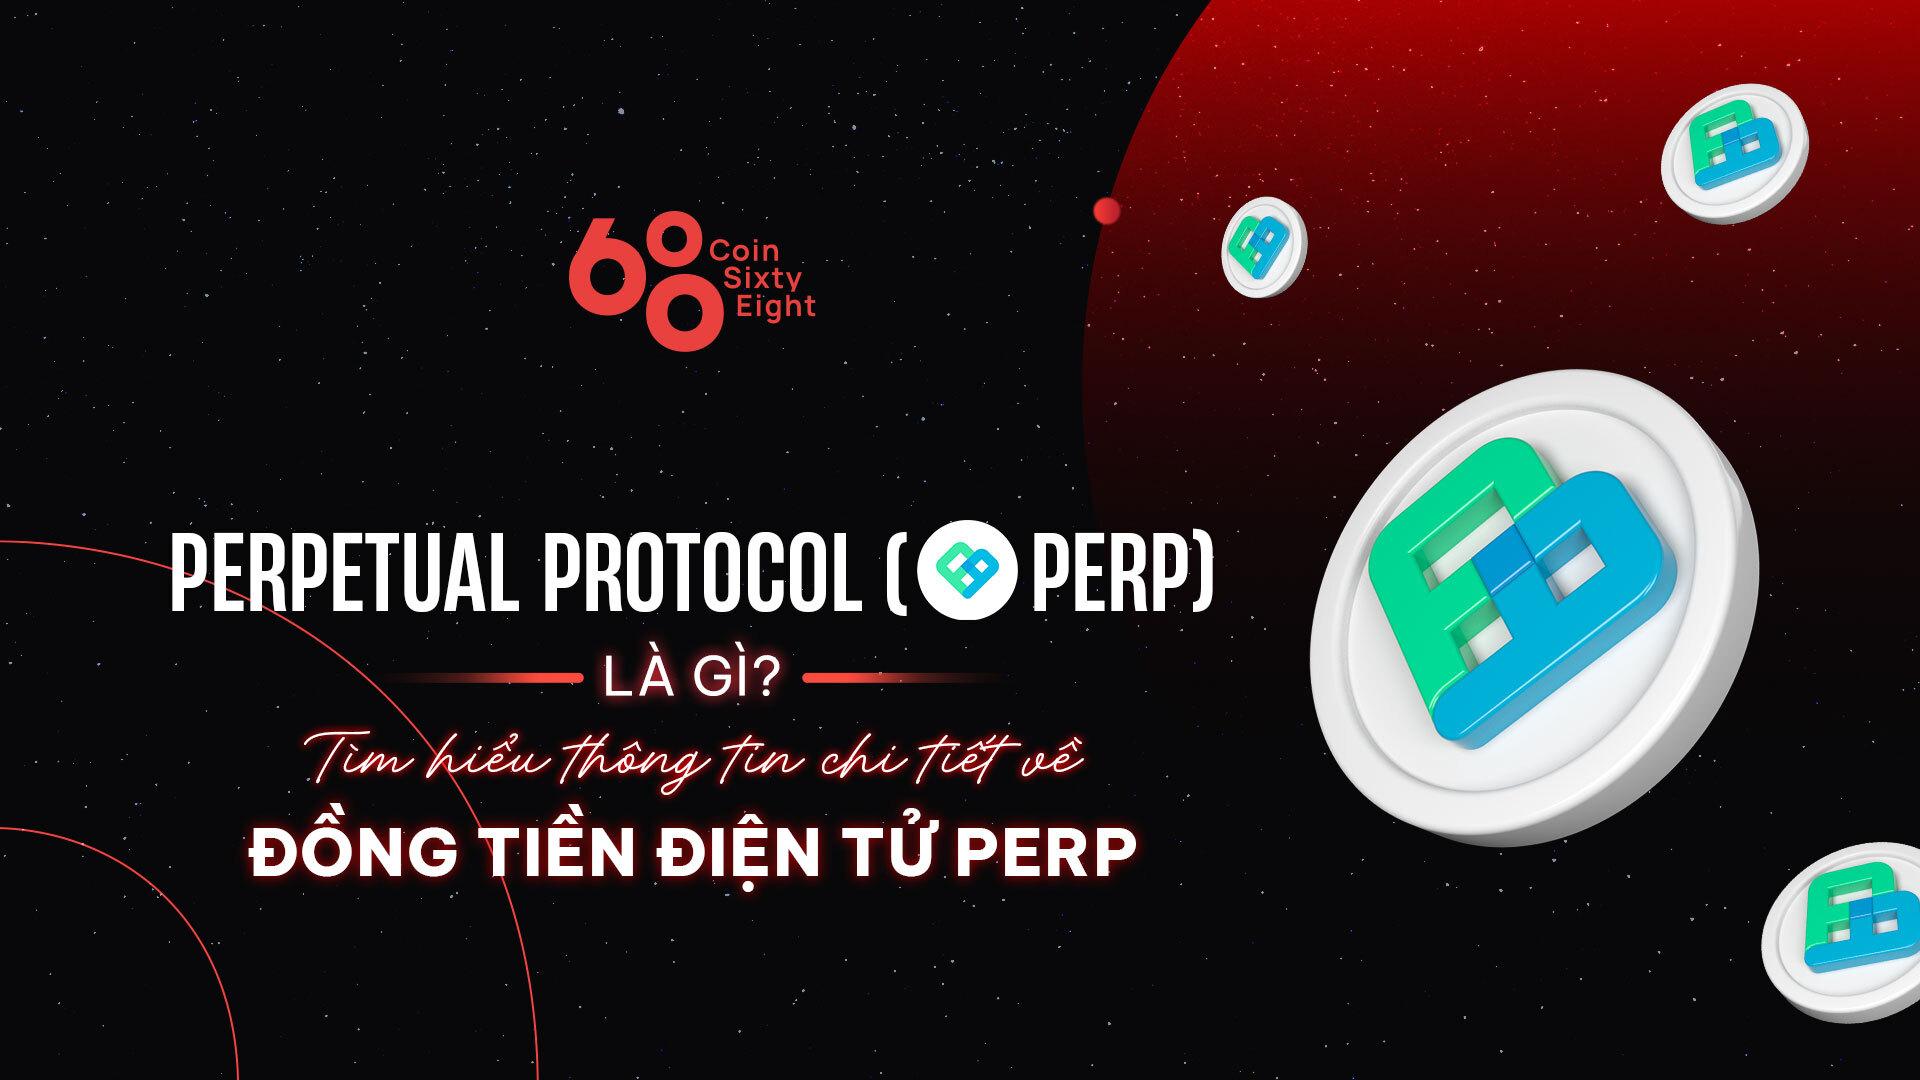 perpetual-protocol-perp-la-gi-tong-quan-ve-dong-tien-dien-tu-perp